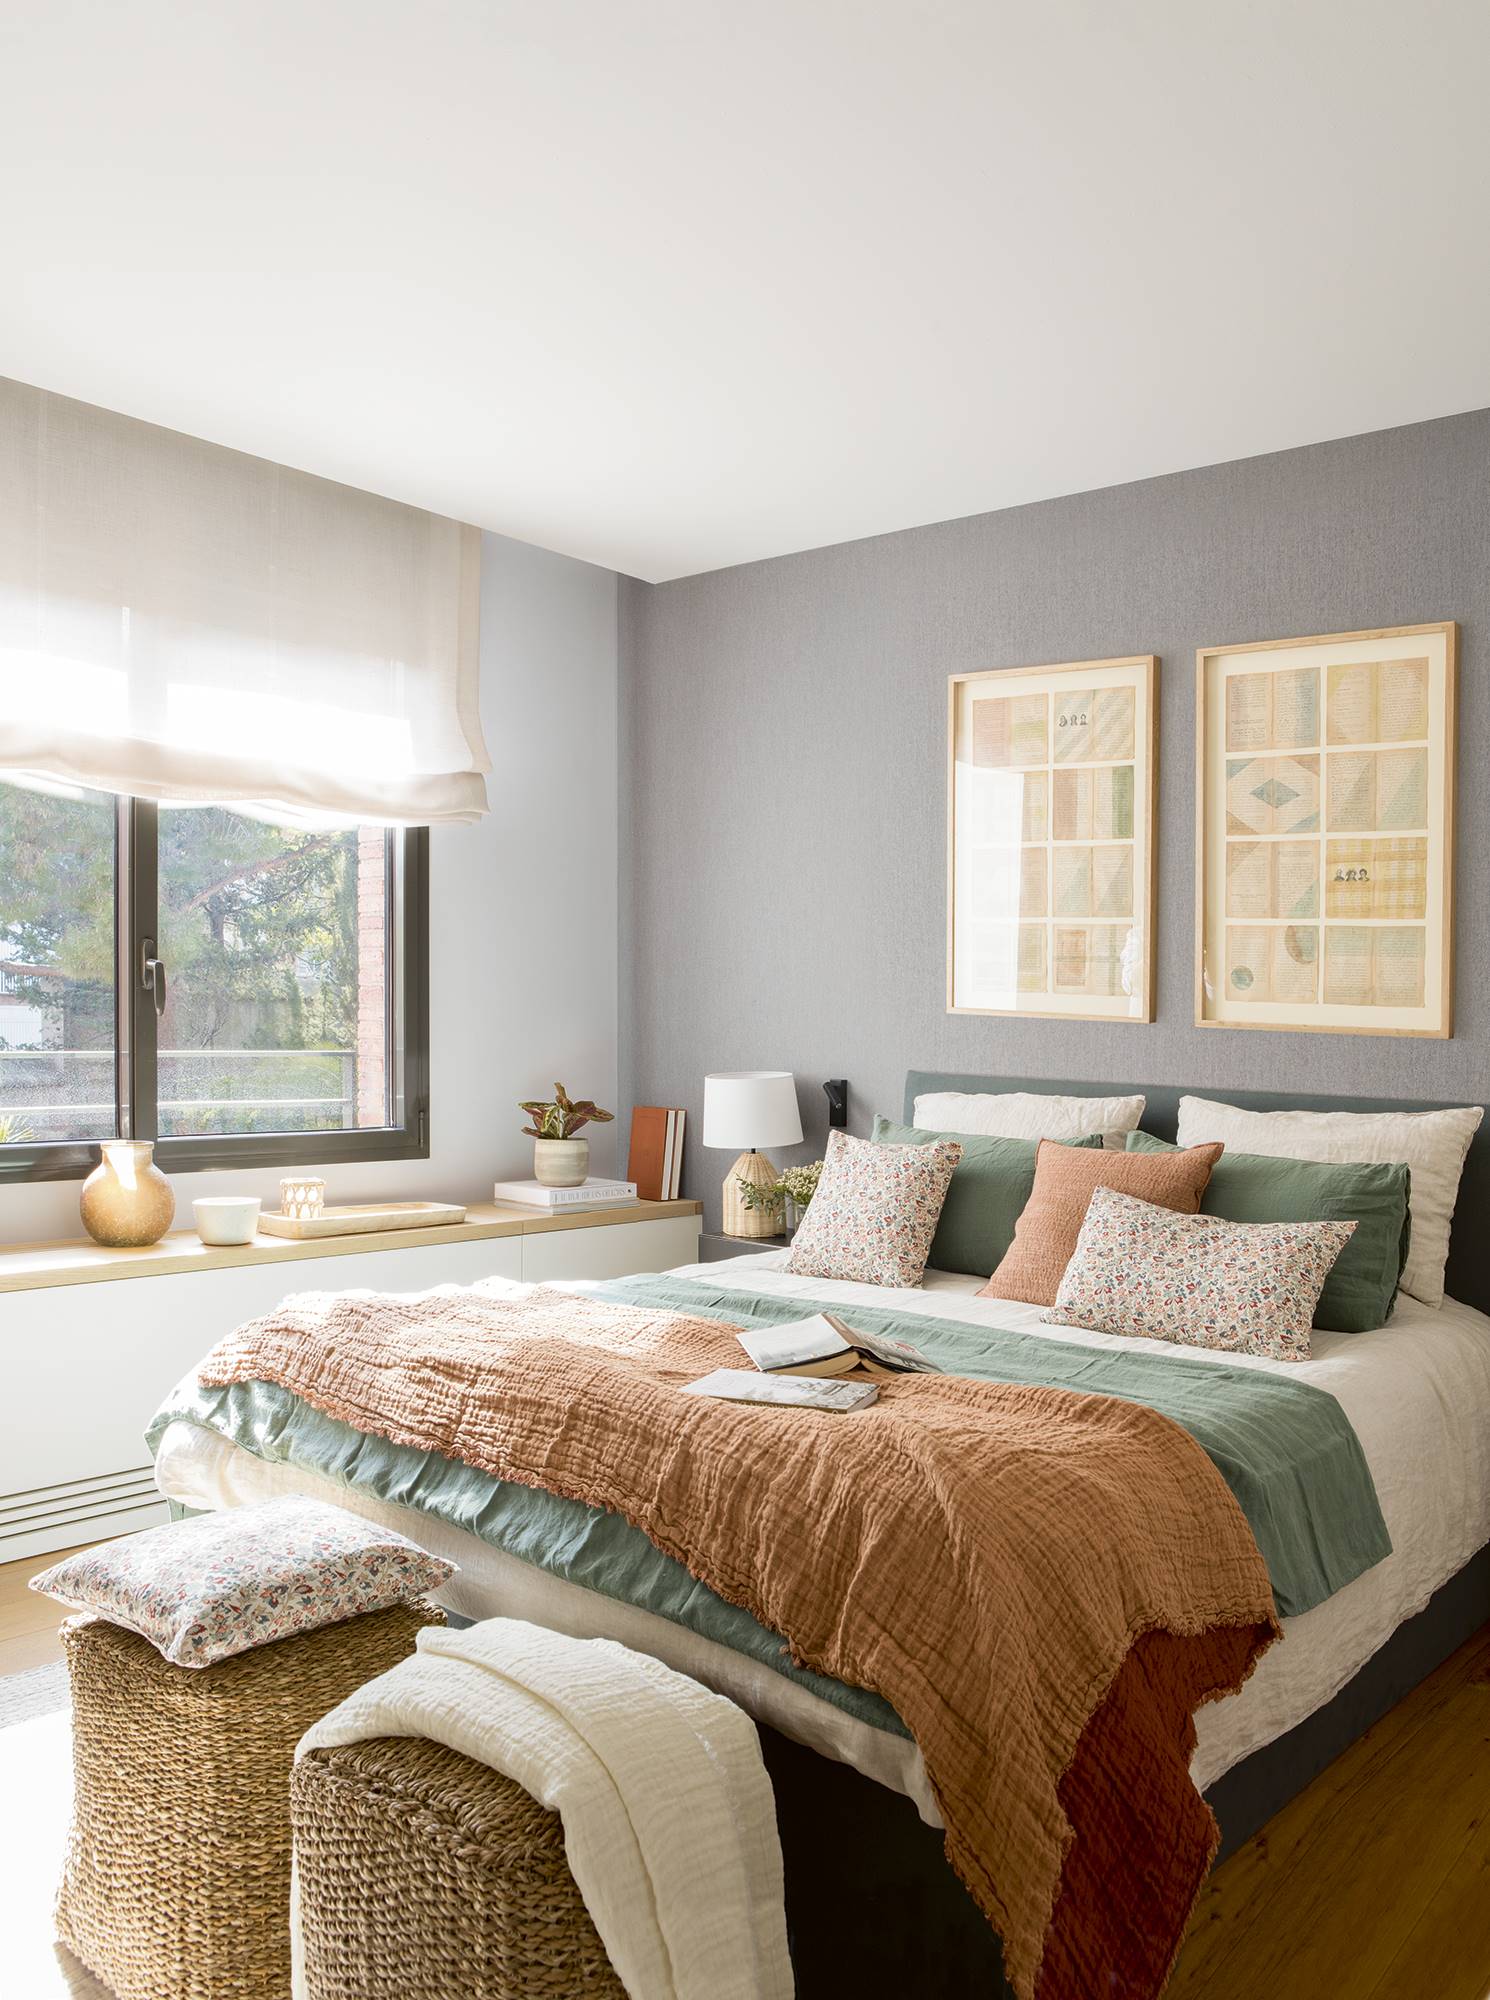 Dormitorio con cabecero tapizado, papel pintado, pufs de fibras y un mueble a medida blanco y de madera.